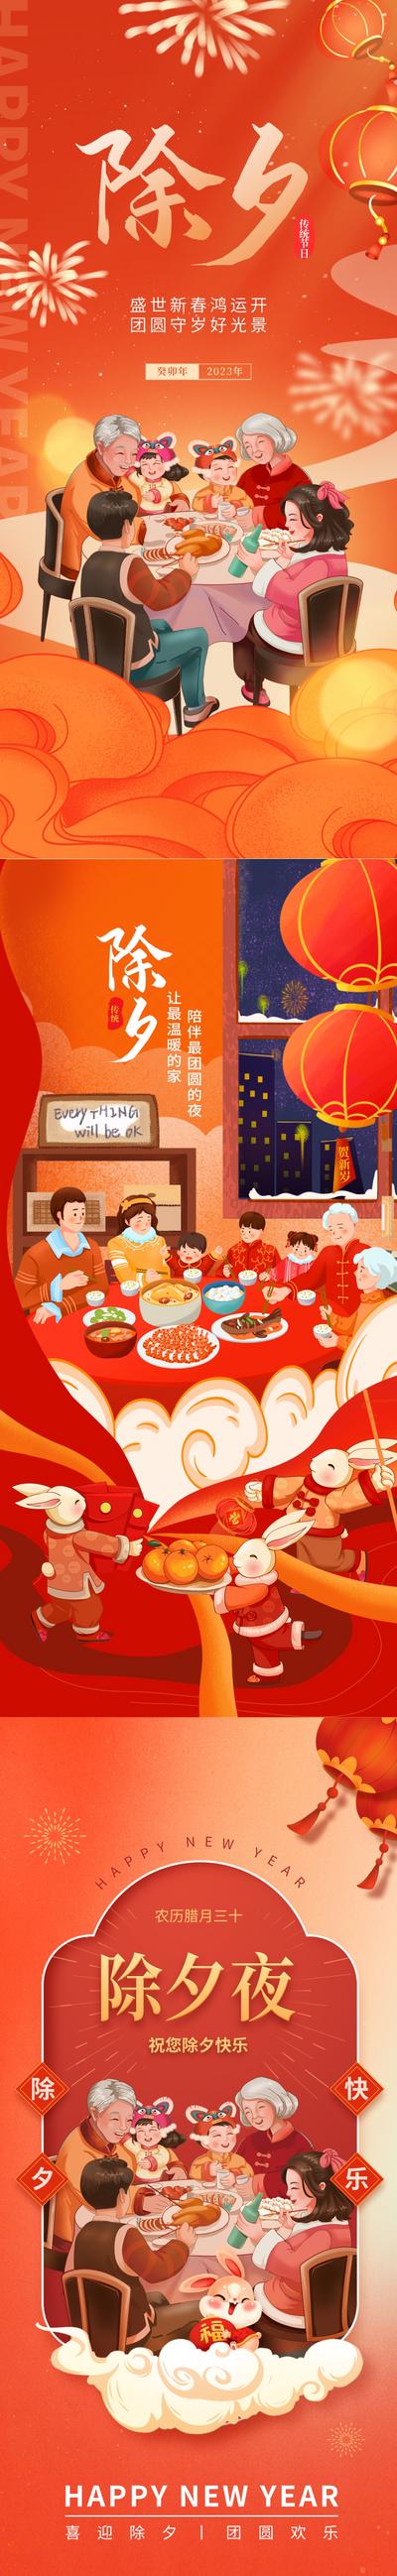 南门网 海报 中国传统节日 除夕夜 新年 春节 国潮 插画